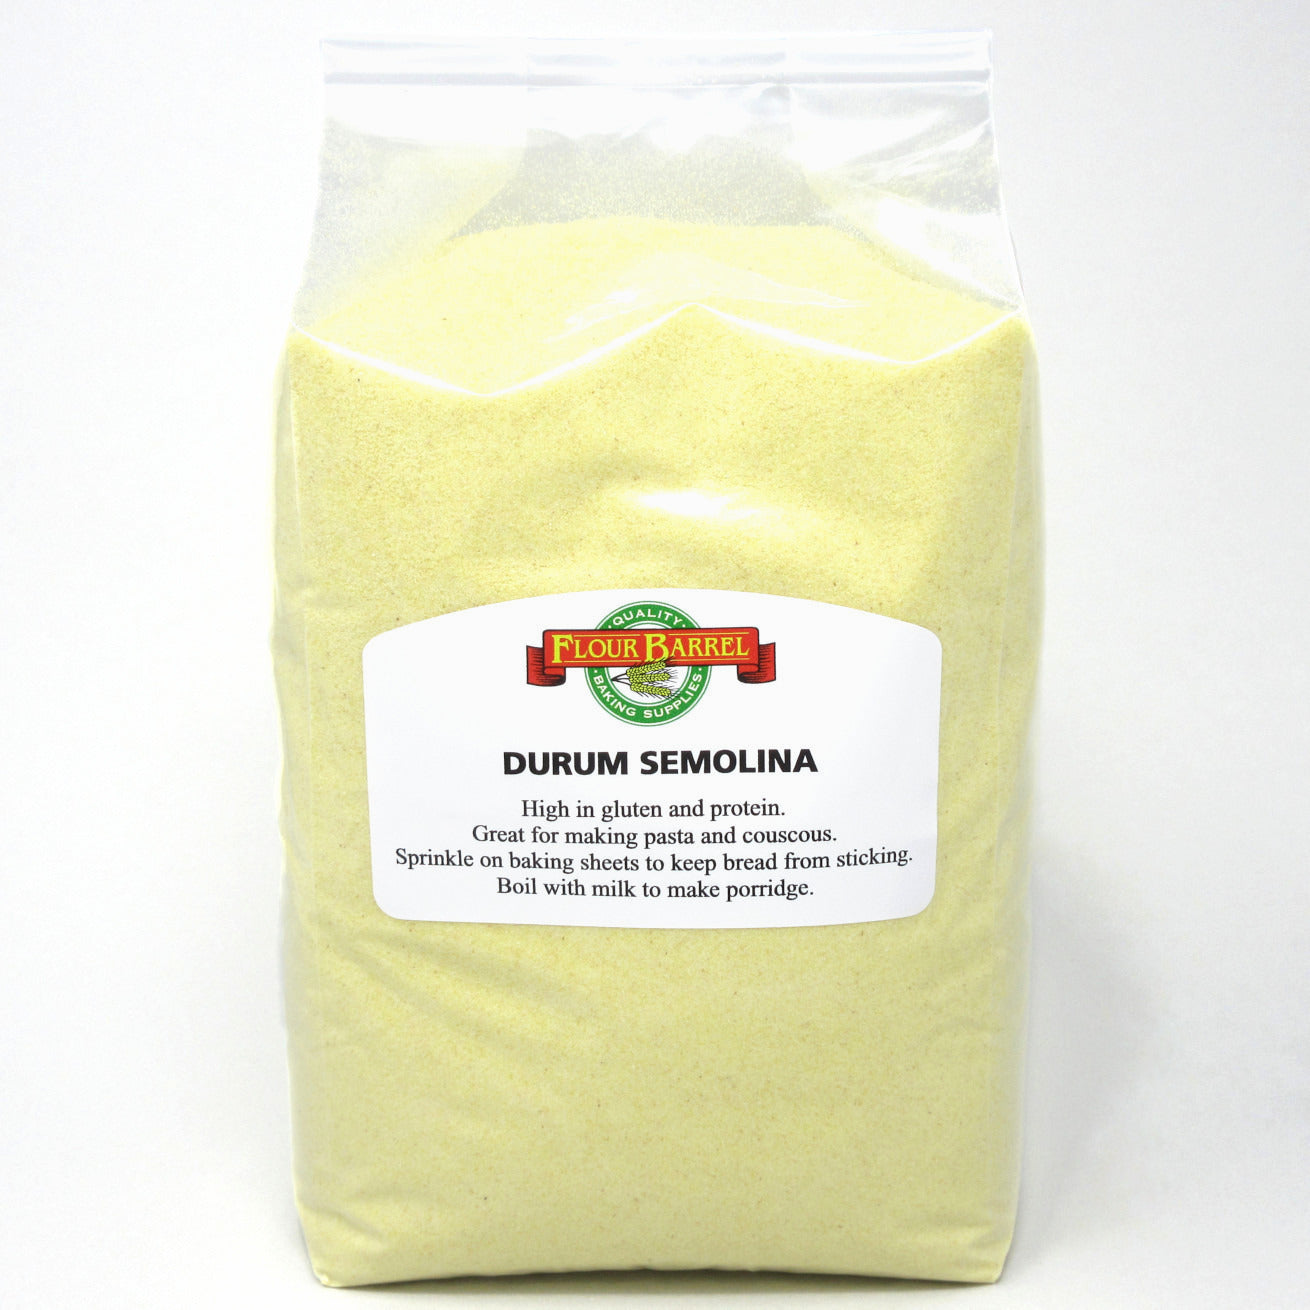 Flour Barrel product image - Durum Semolina